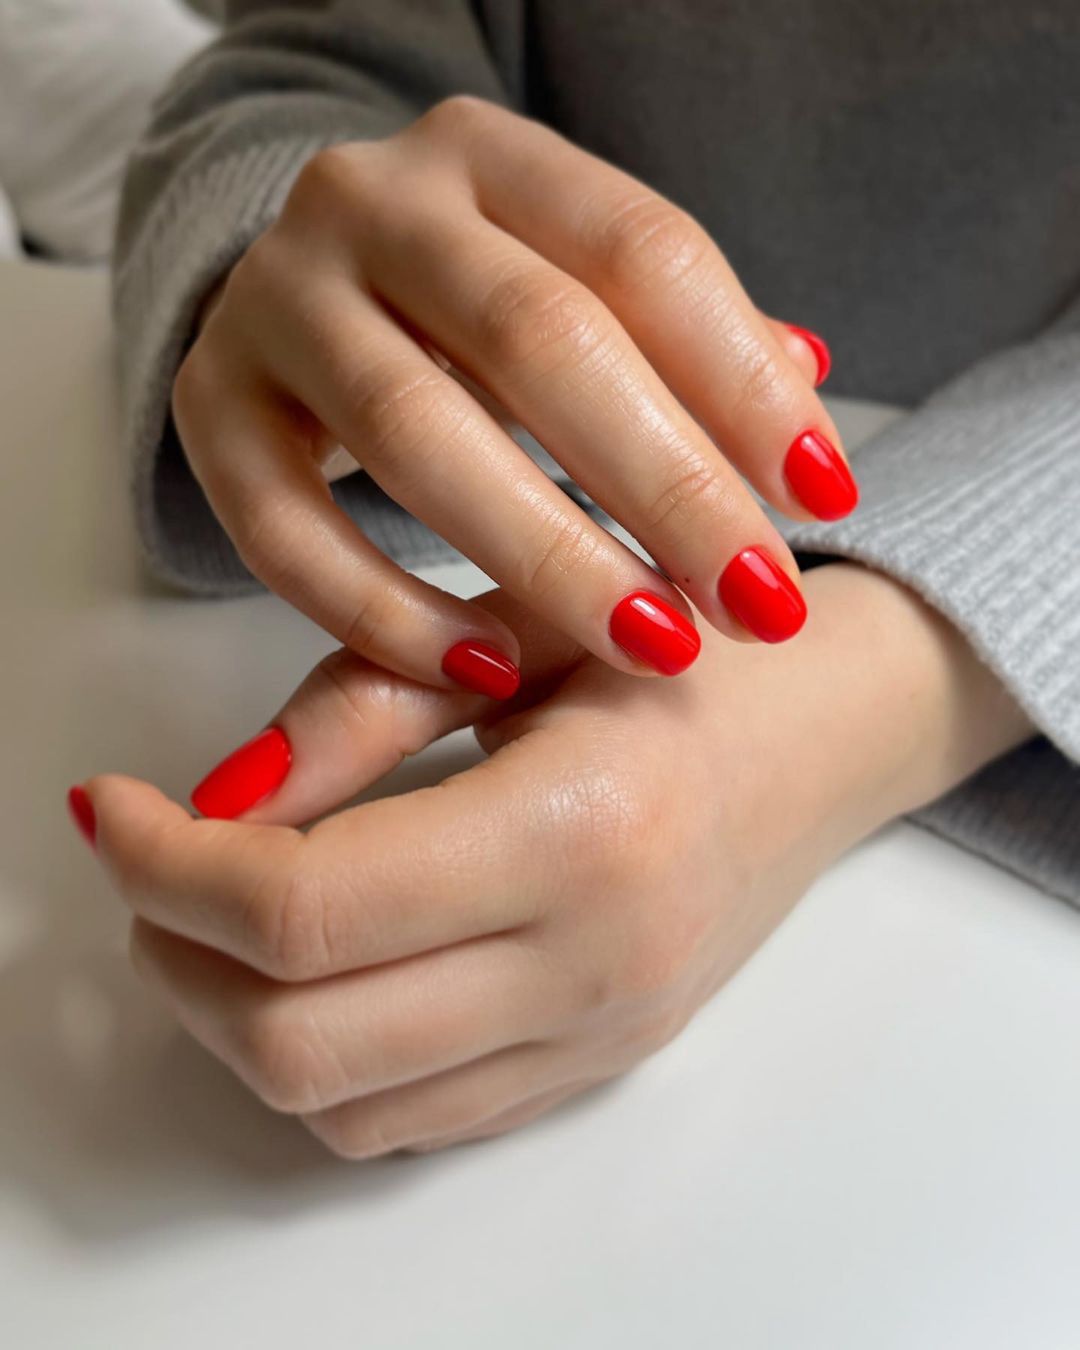 Czerwony manicure ożywia dojrzałą skórę dłoni